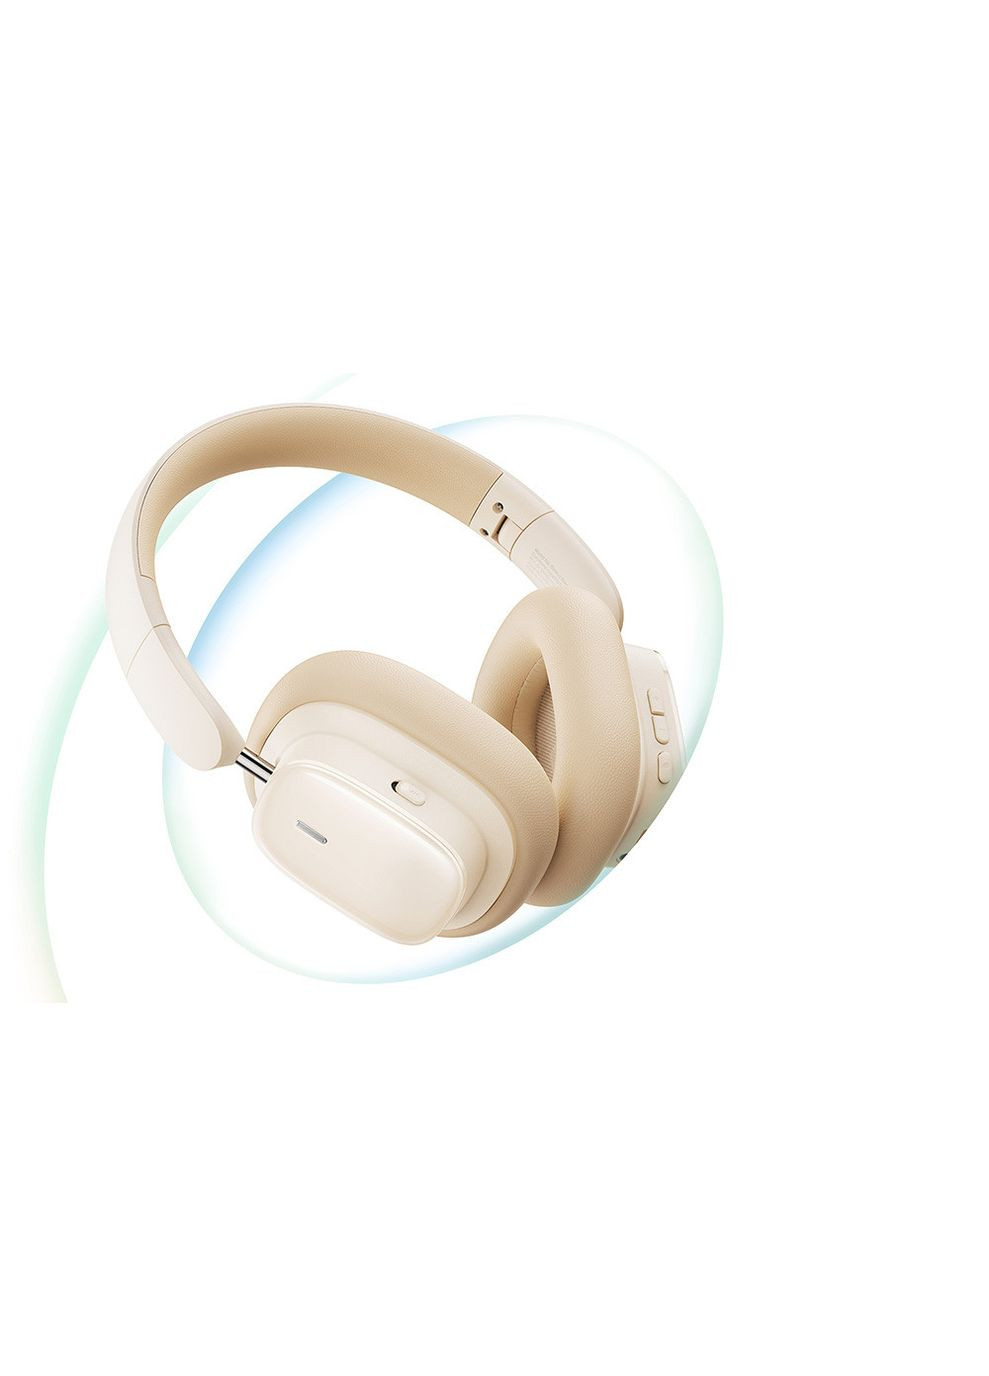 Беспроводные наушники Bowie H1i NoiseCancellation Wireless Headphones полноразмерные белые Baseus (283375185)